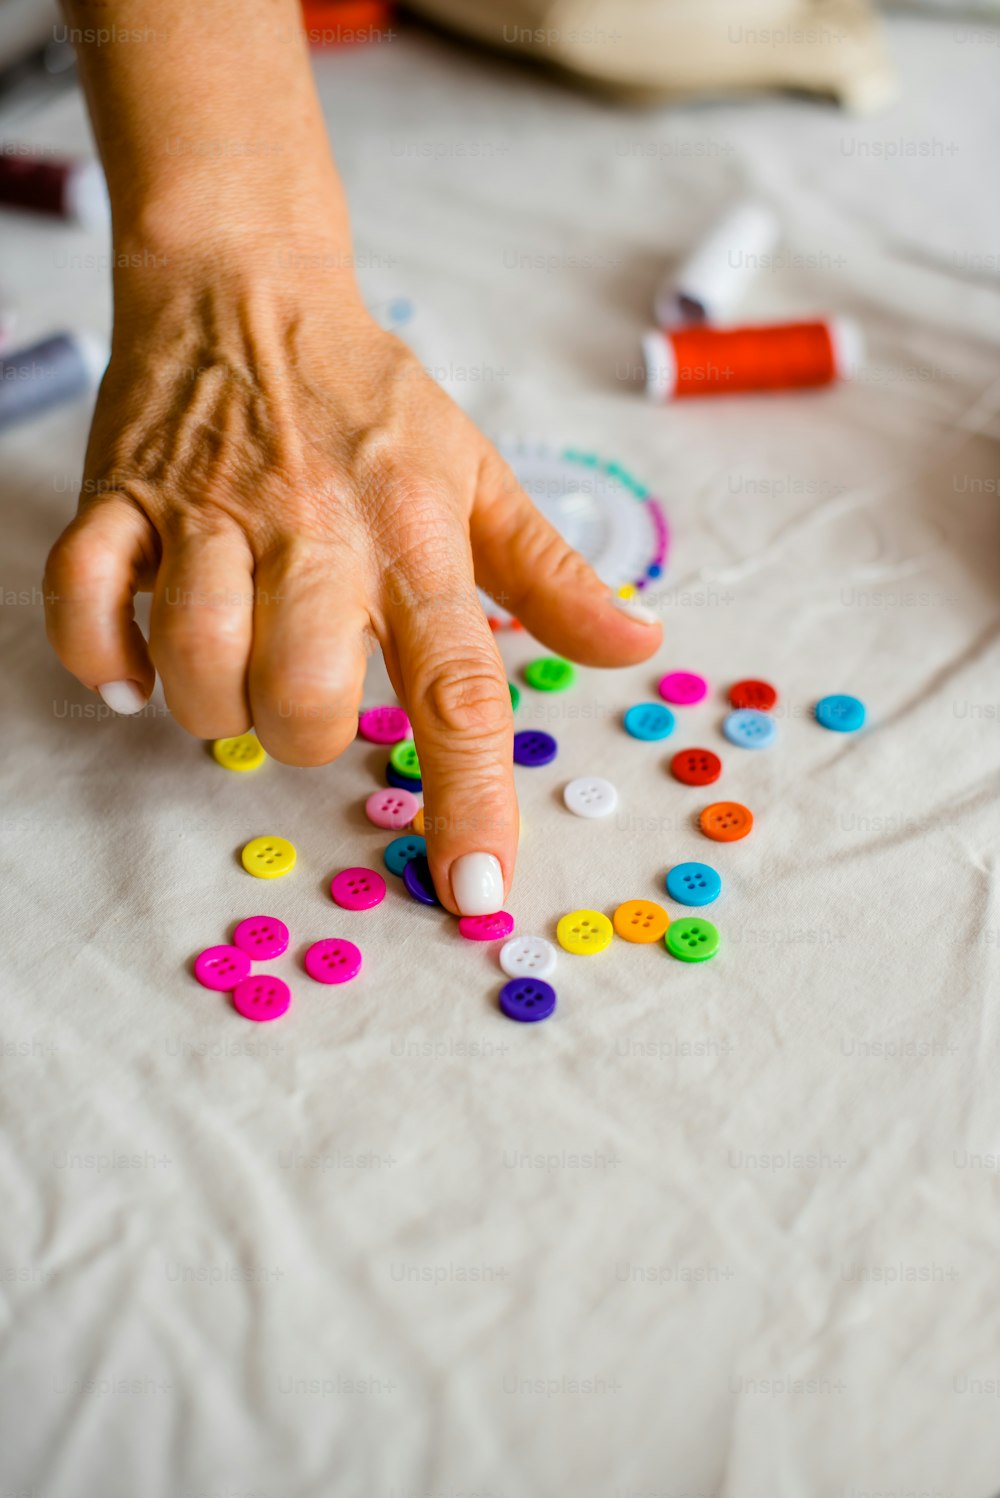 La mano di una persona che raggiunge i pulsanti colorati su un tavolo